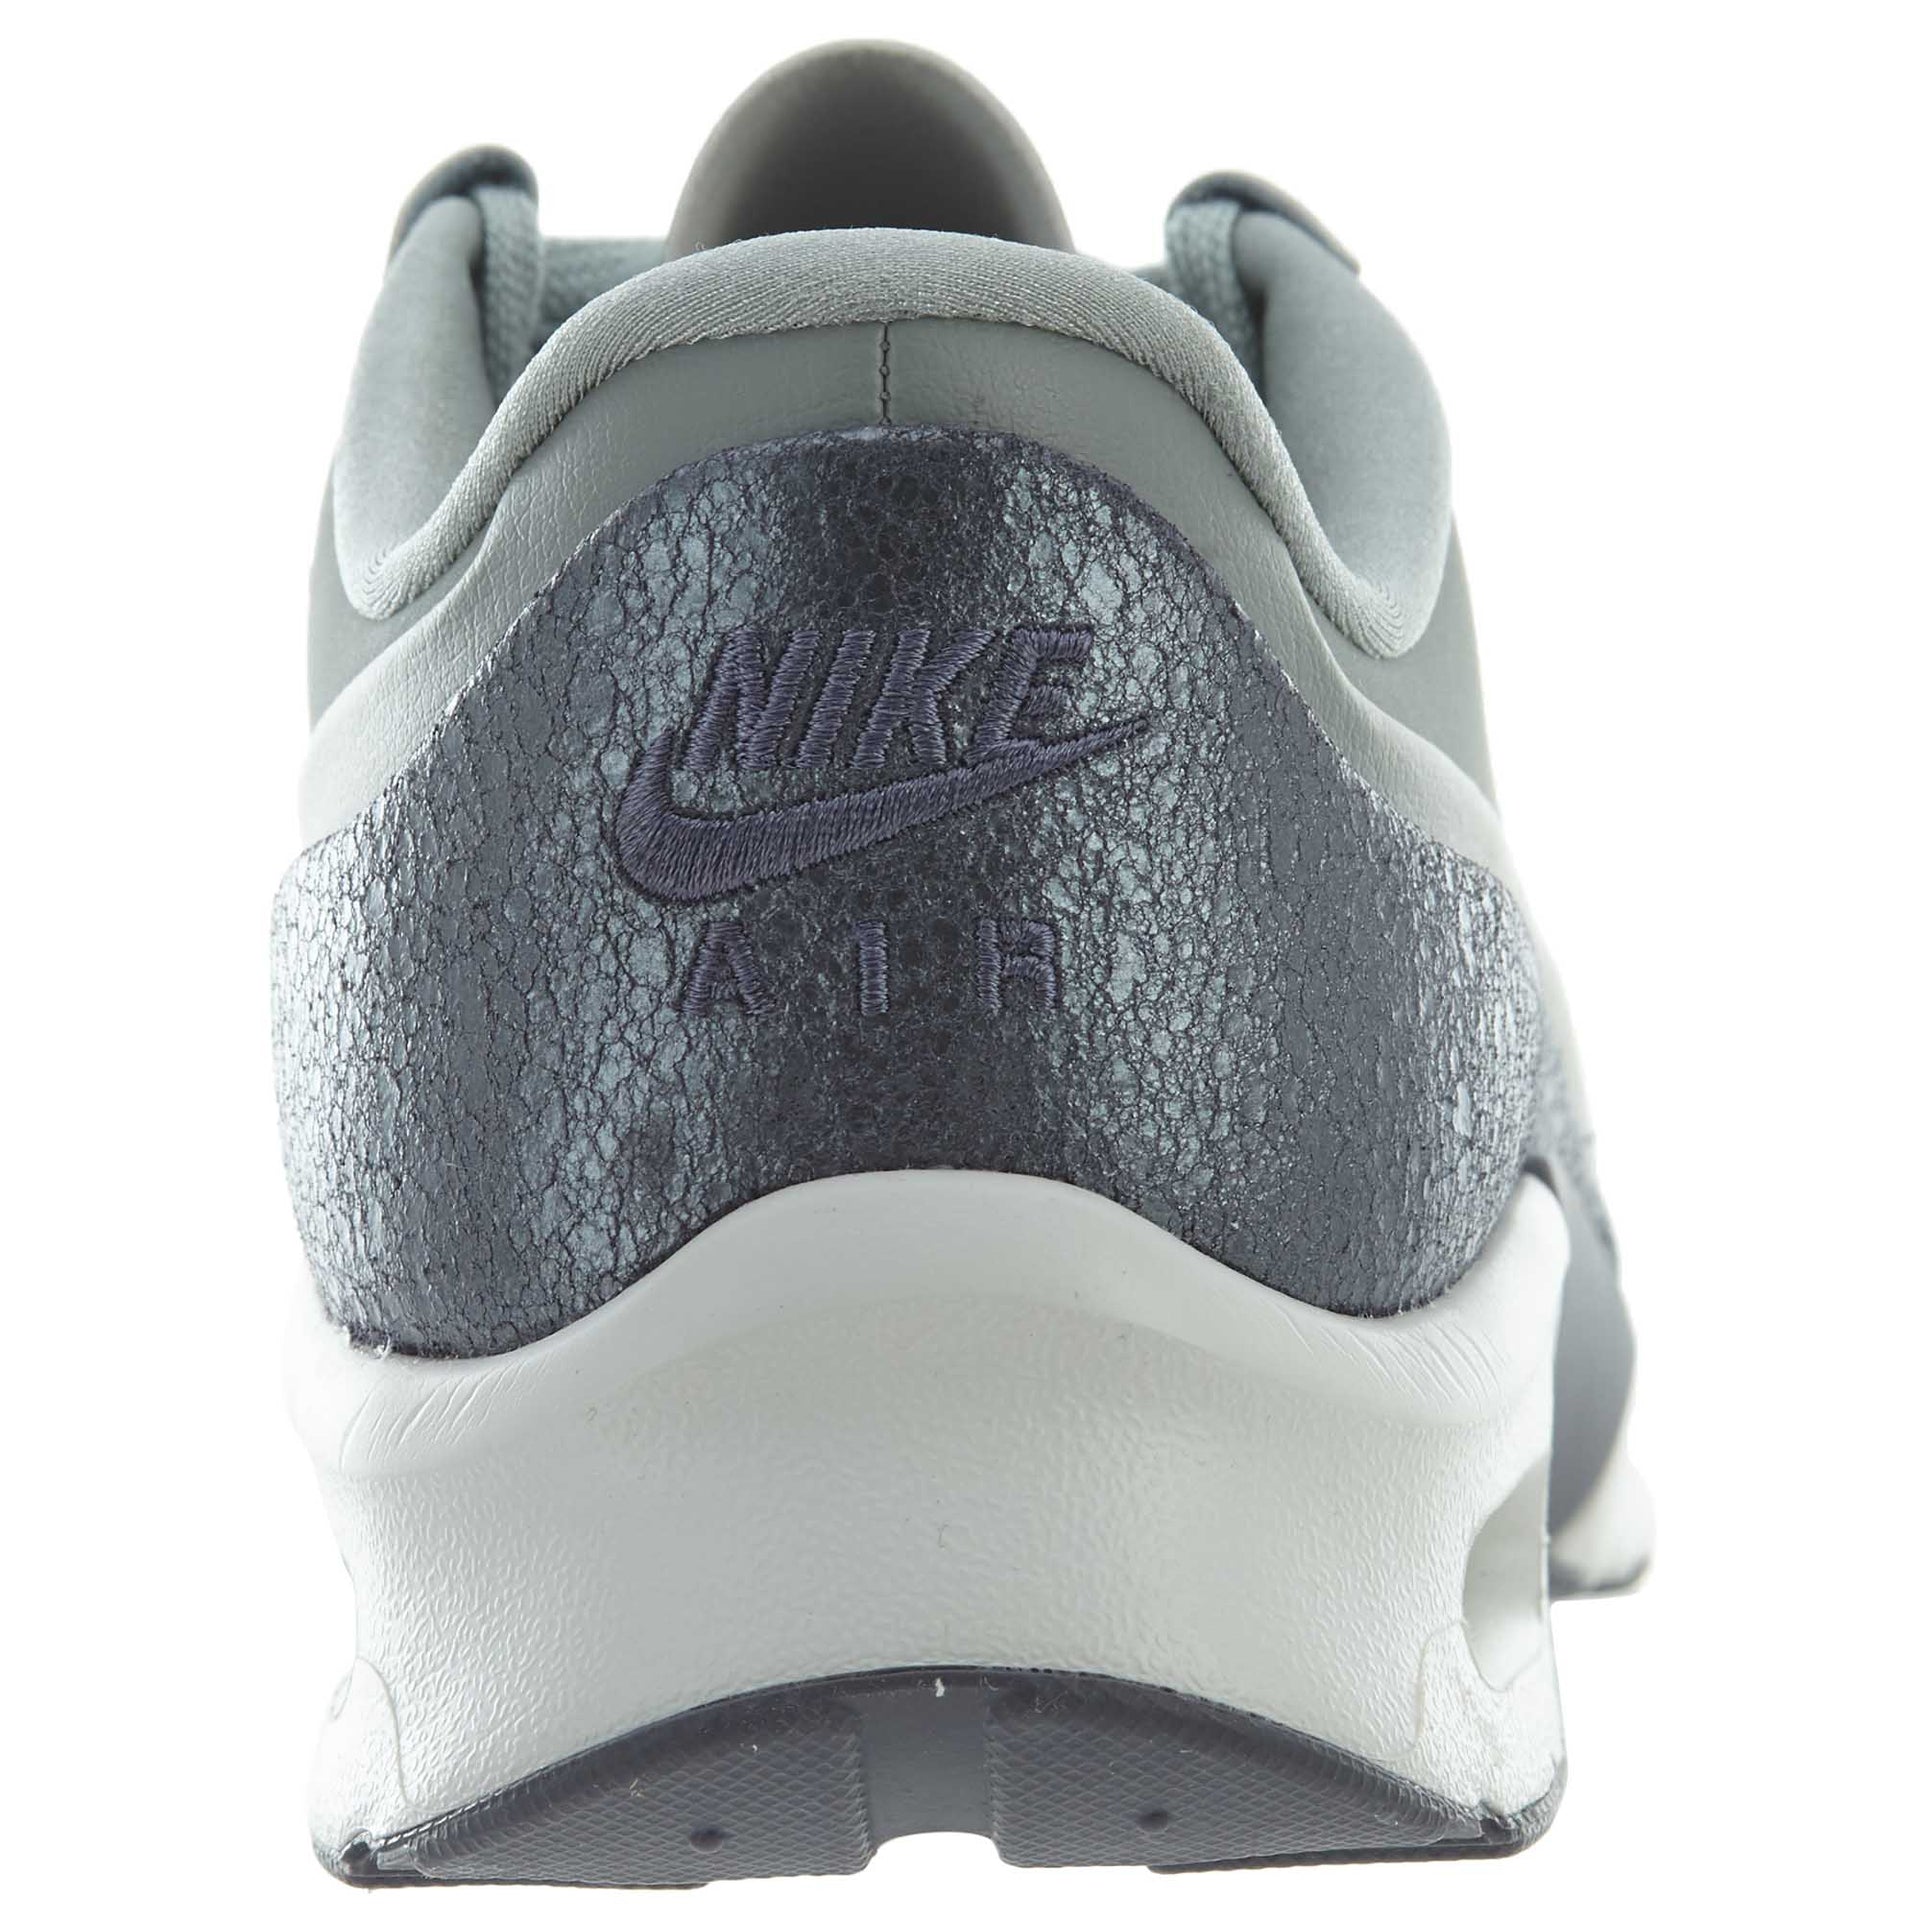 Nike Air Max Jewell Leather Pumice Metallic Cool Grey (Women's)